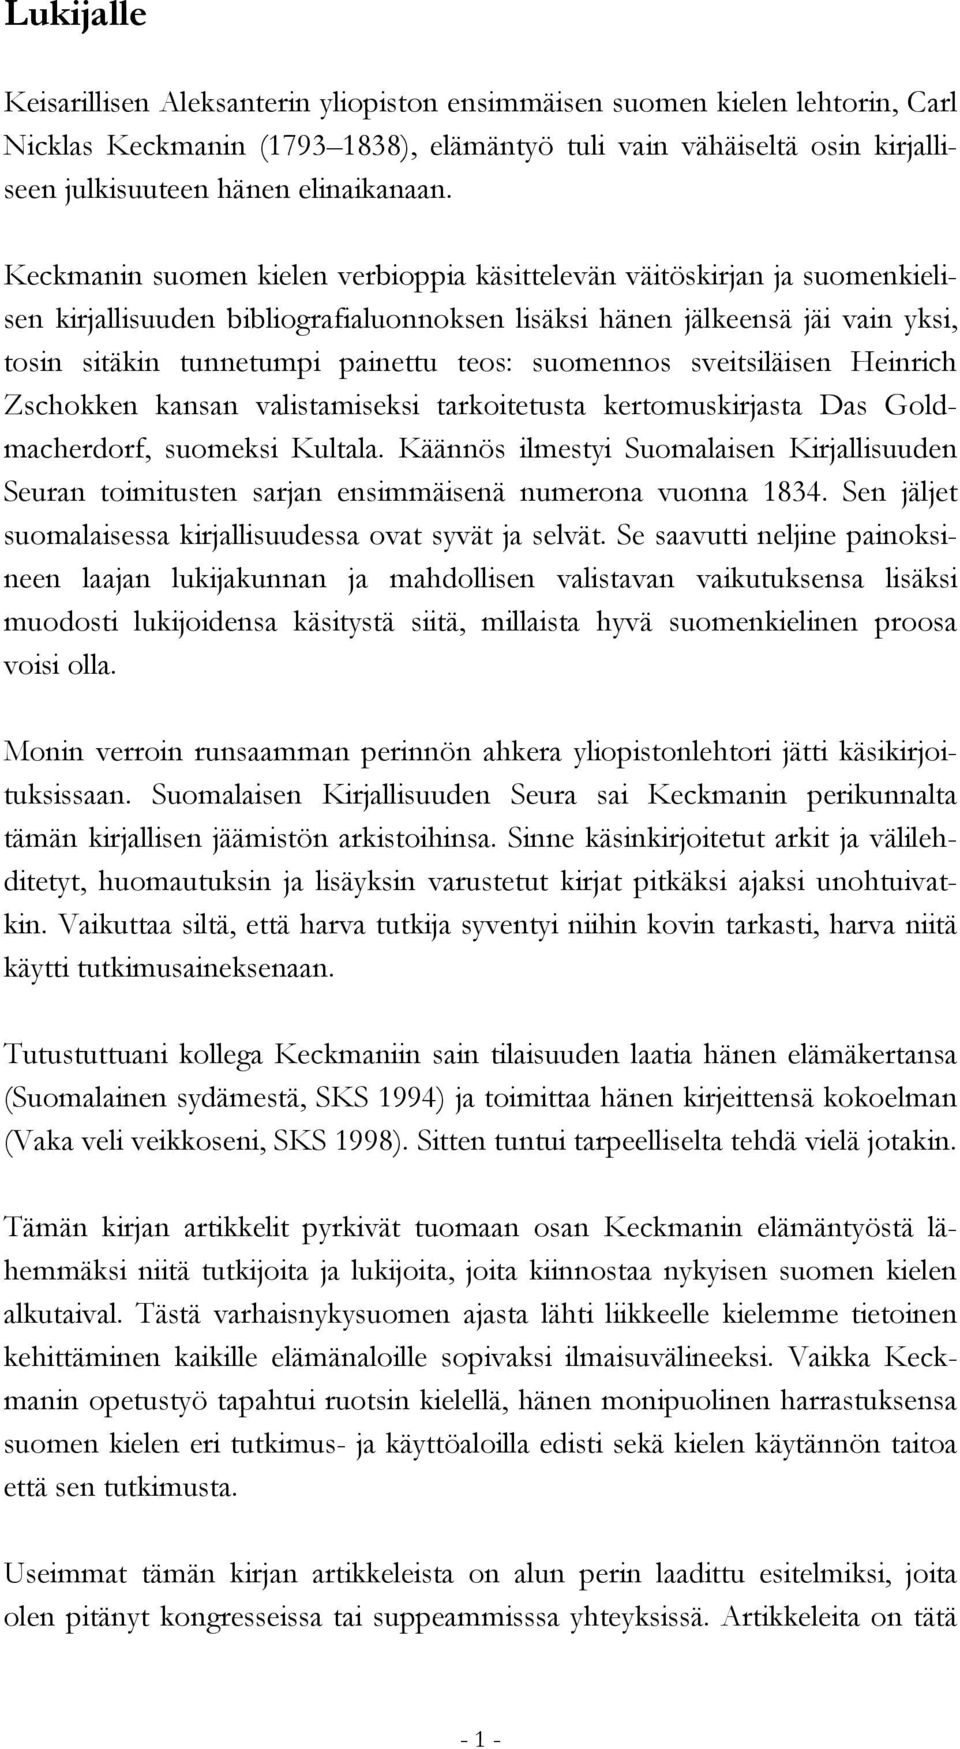 Keckmanin suomen kielen verbioppia käsittelevän väitöskirjan ja suomenkielisen kirjallisuuden bibliografialuonnoksen lisäksi hänen jälkeensä jäi vain yksi, tosin sitäkin tunnetumpi painettu teos: